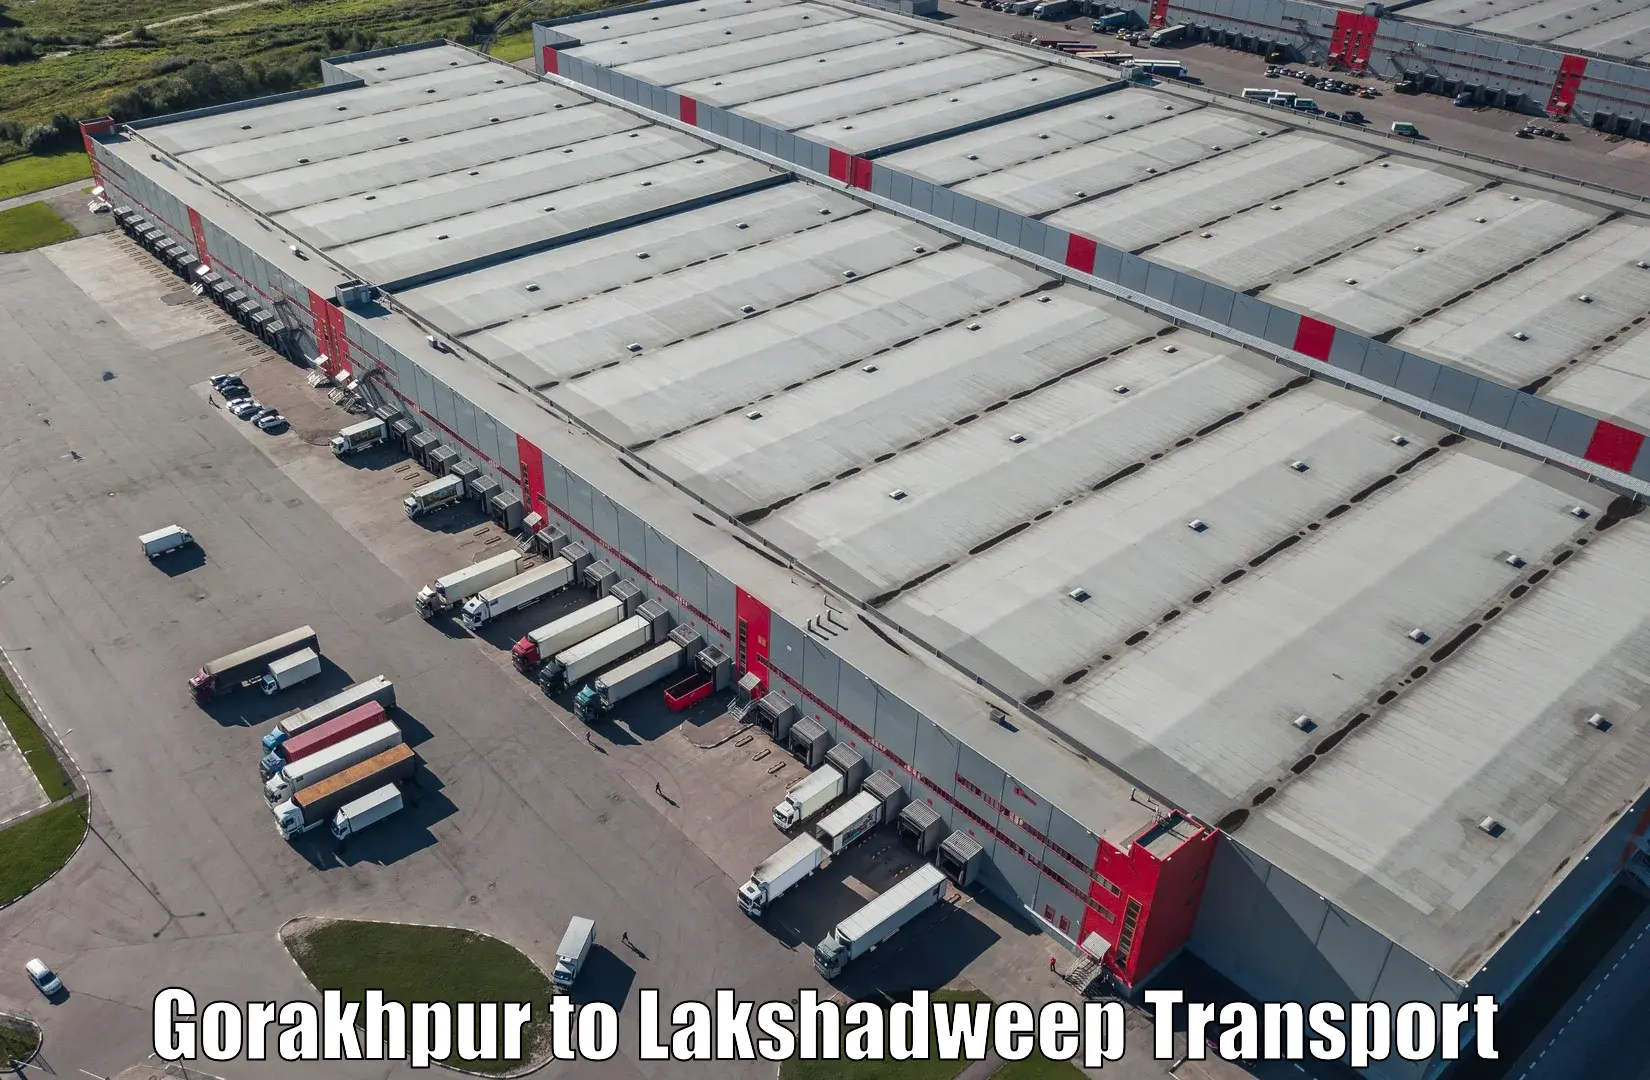 Furniture transport service Gorakhpur to Lakshadweep